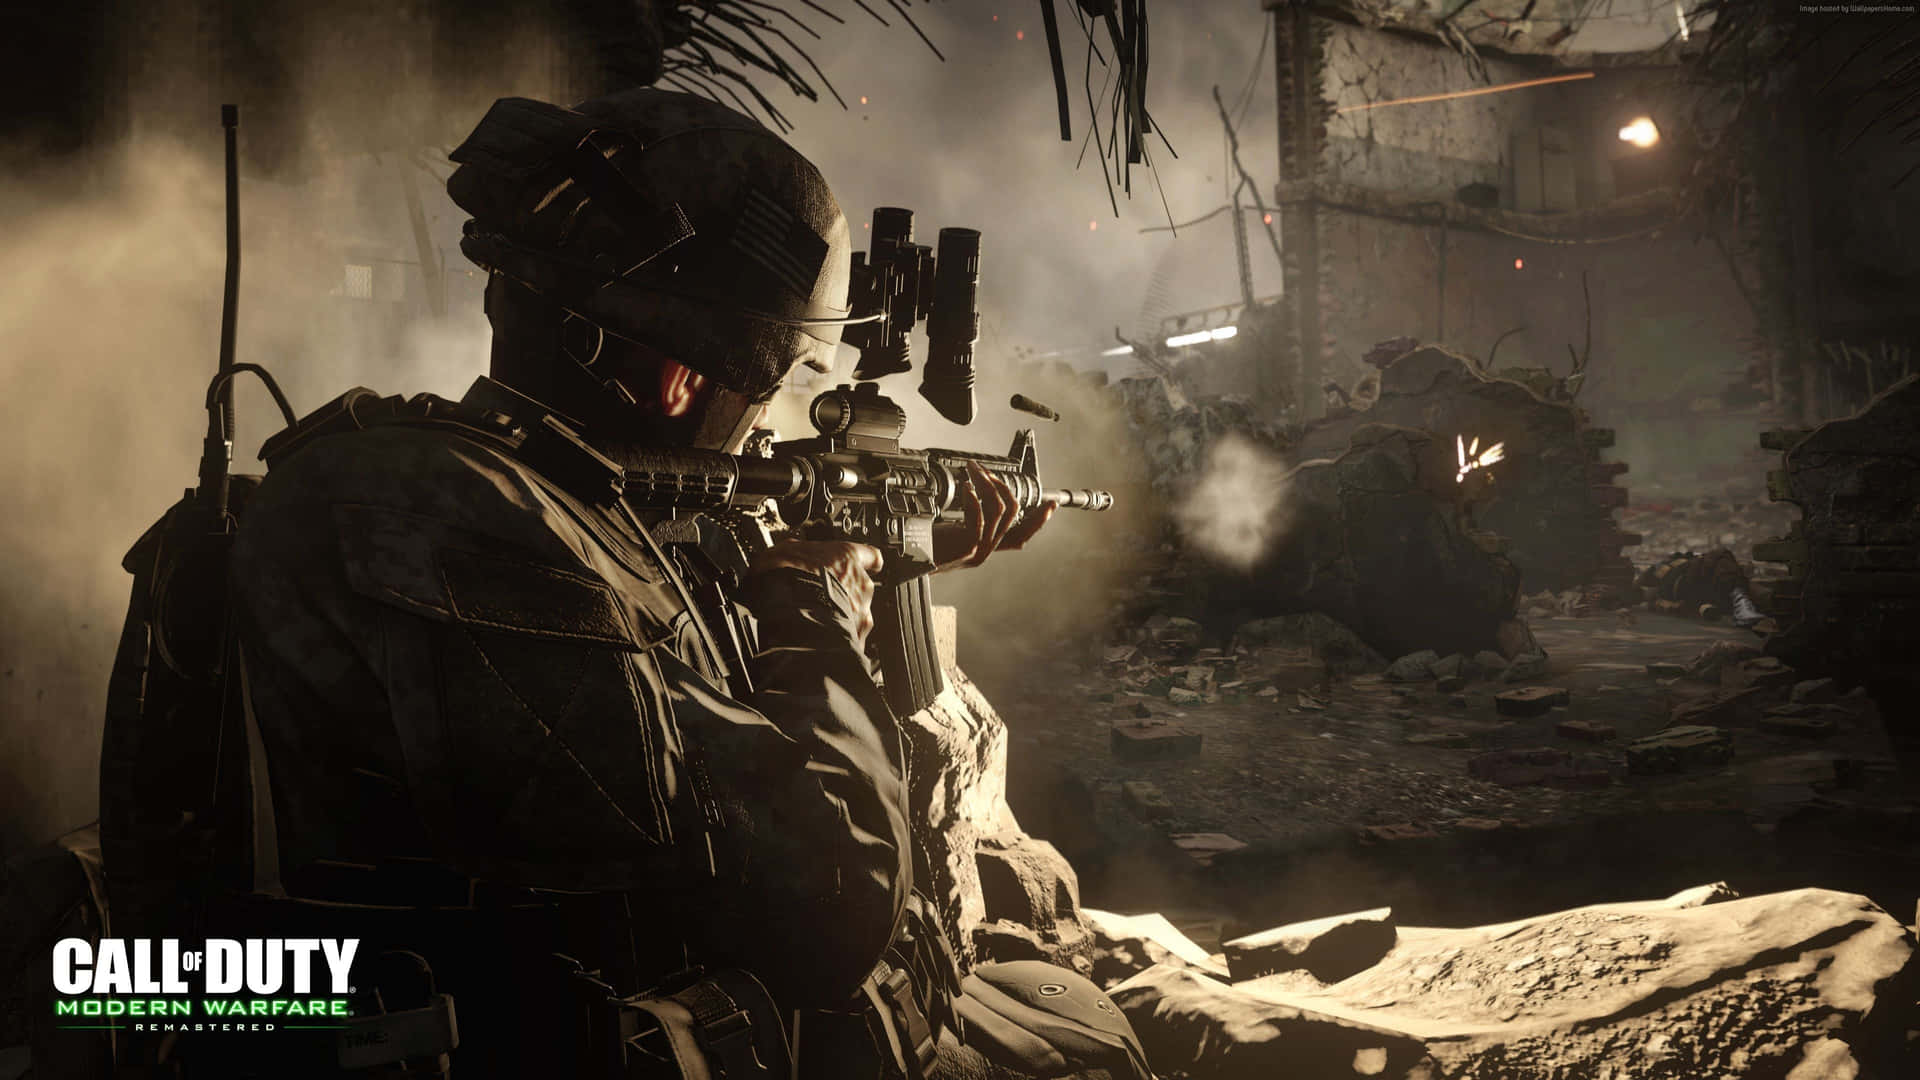 4kbakgrundsbild För Call Of Duty Modern Warfare Med Assault Rifle Som Skjuter.